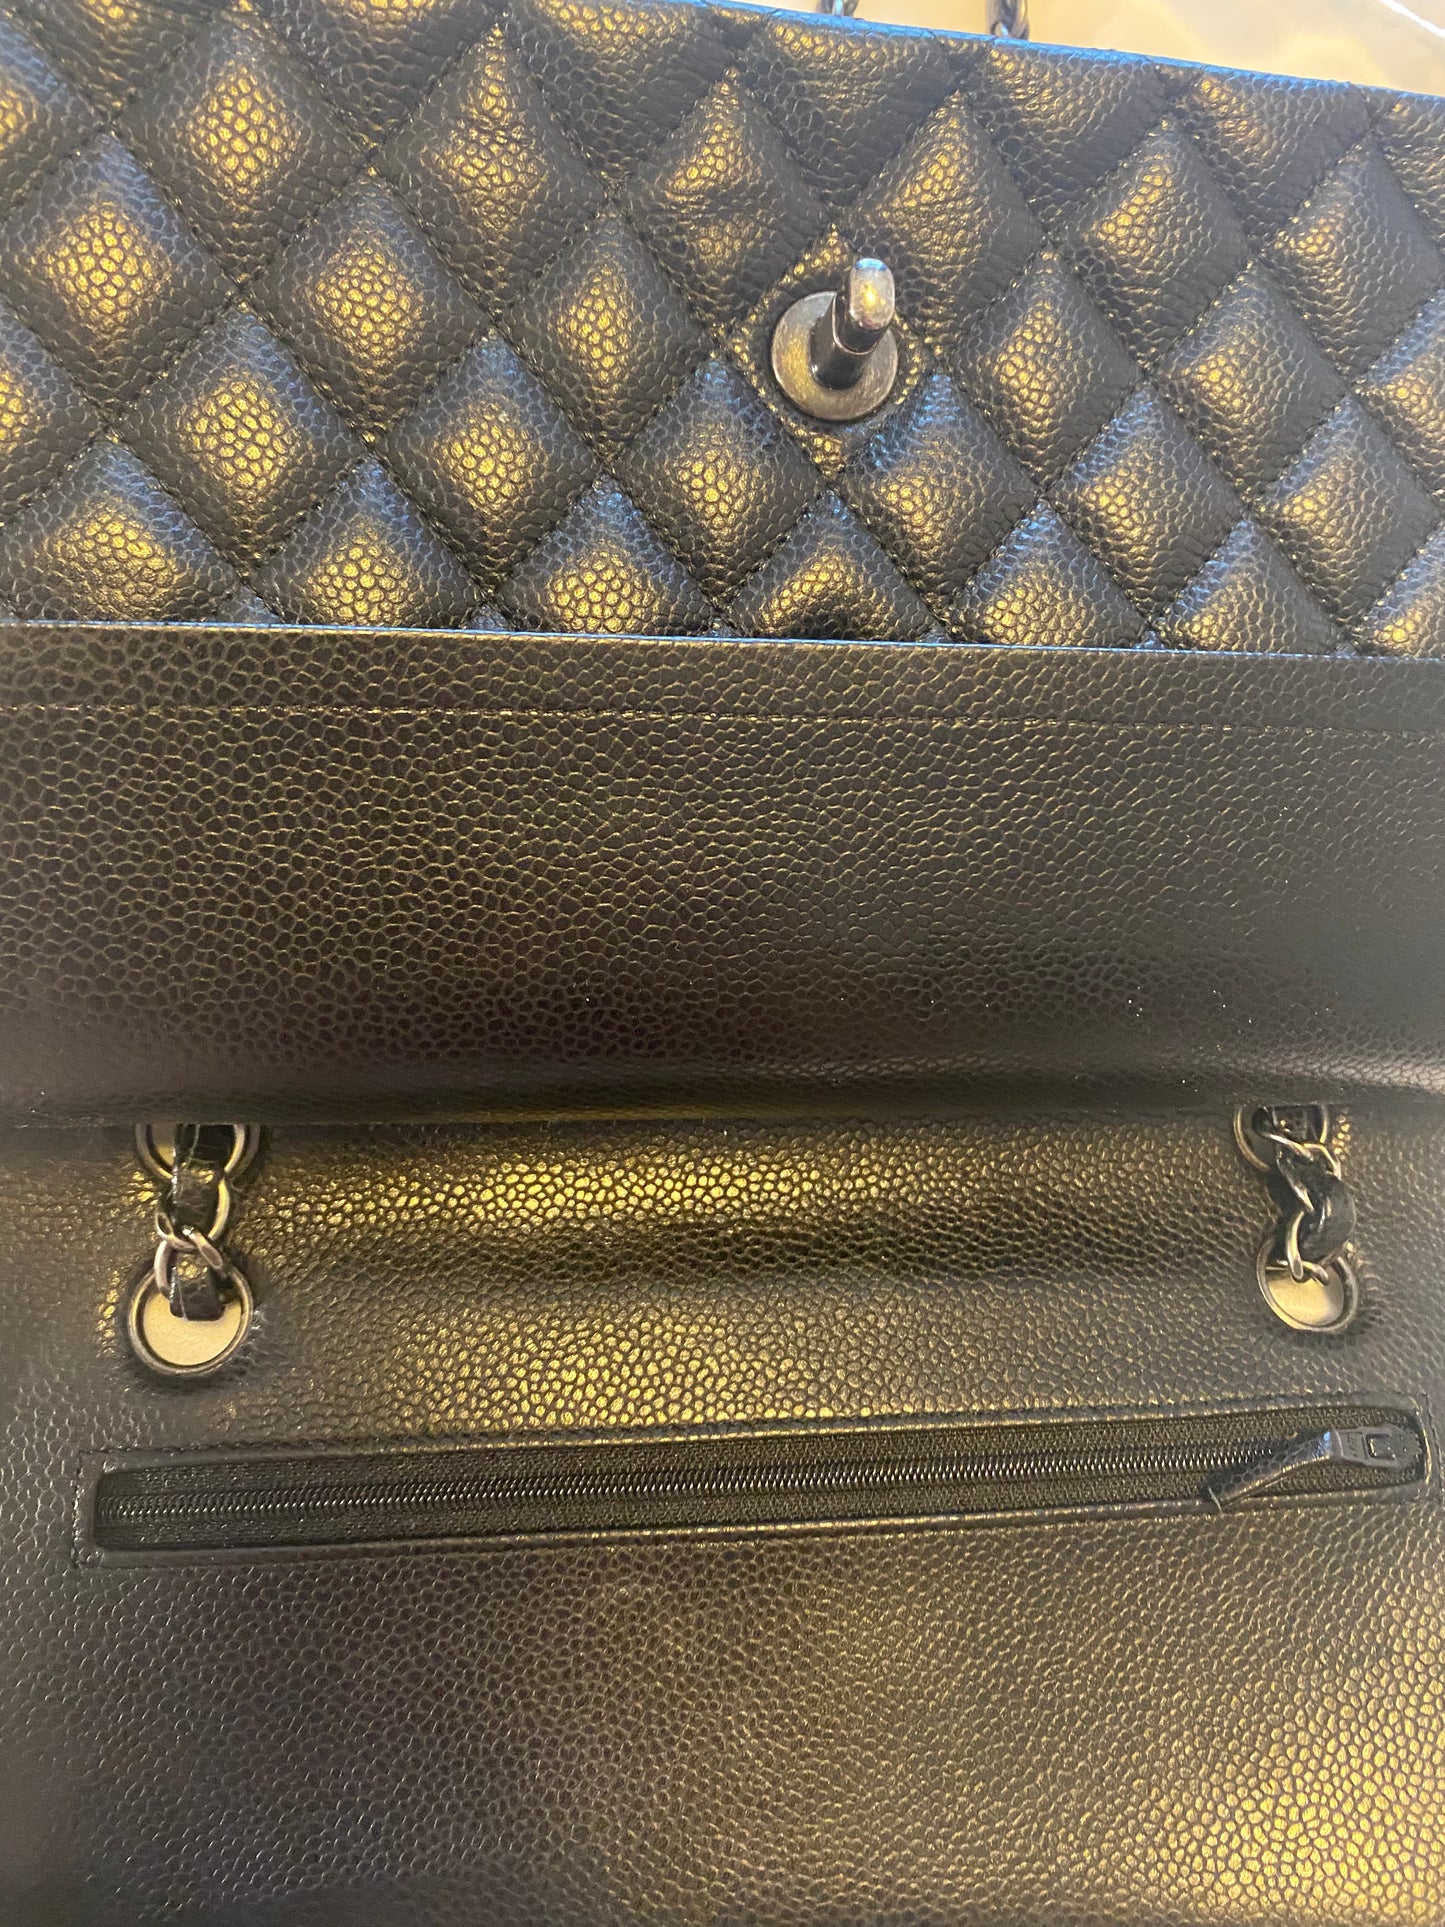 New Bag: Chanel Bag